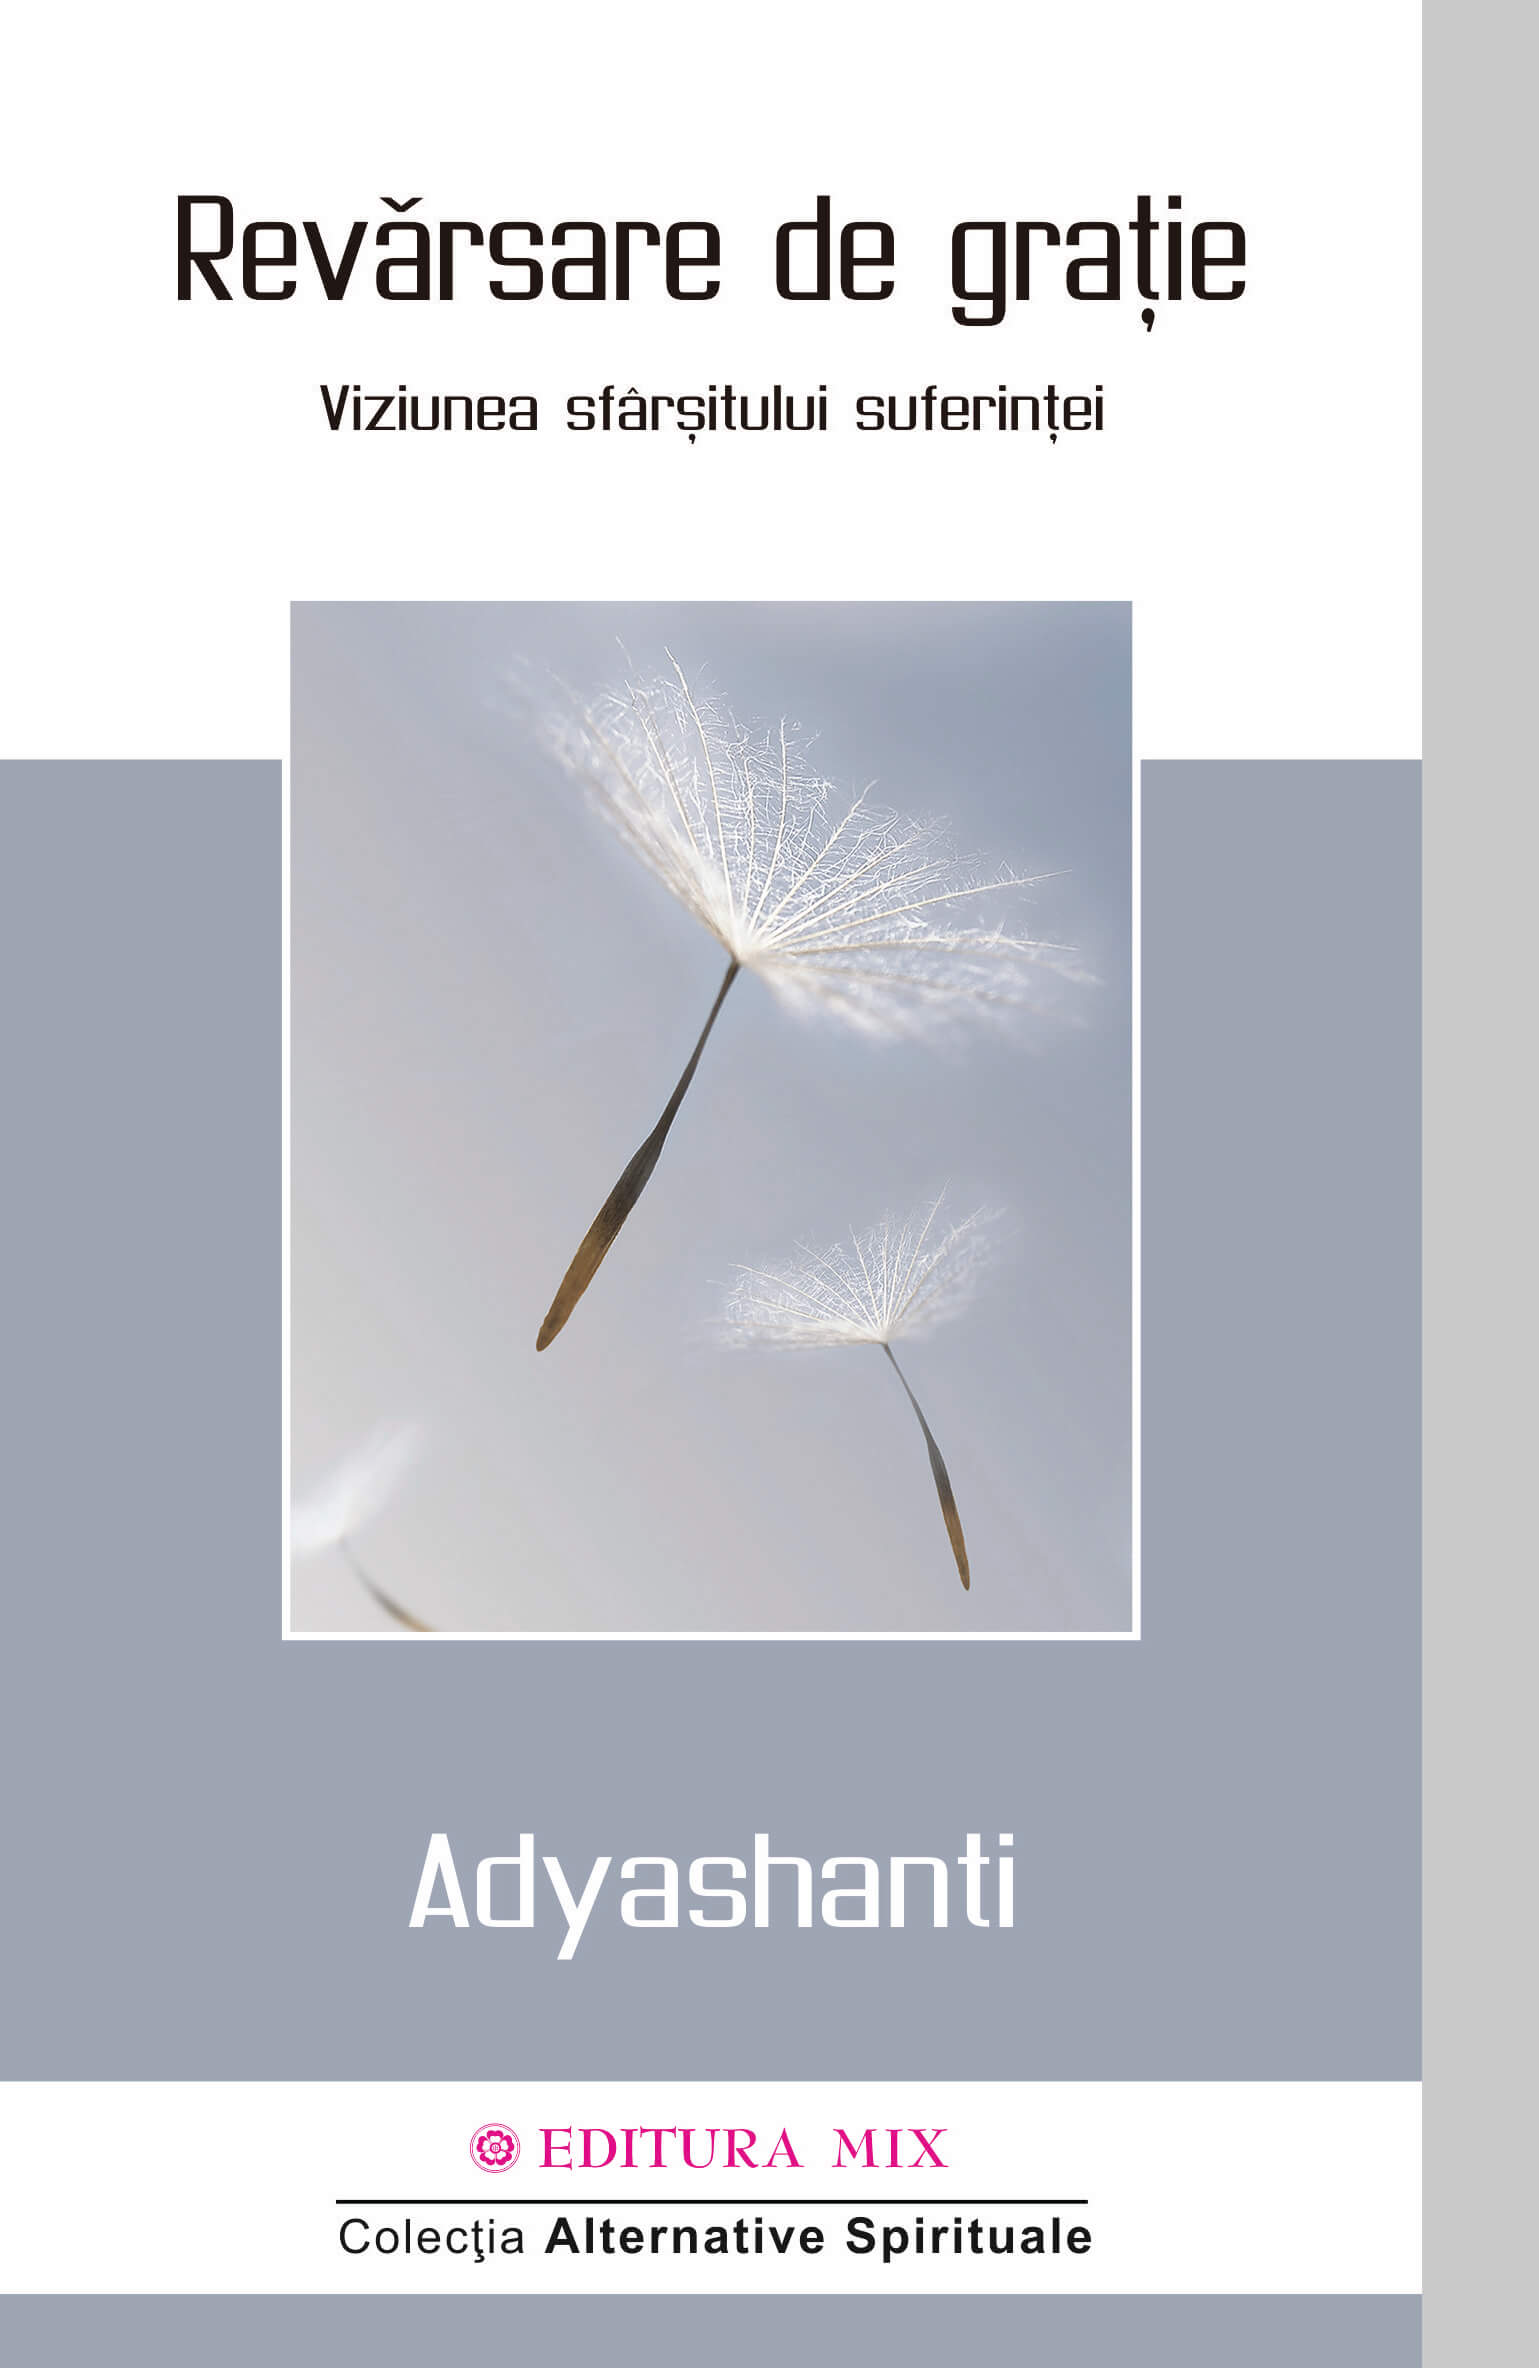 PDF Revarsare de gratie | Adyashanti carturesti.ro Carte